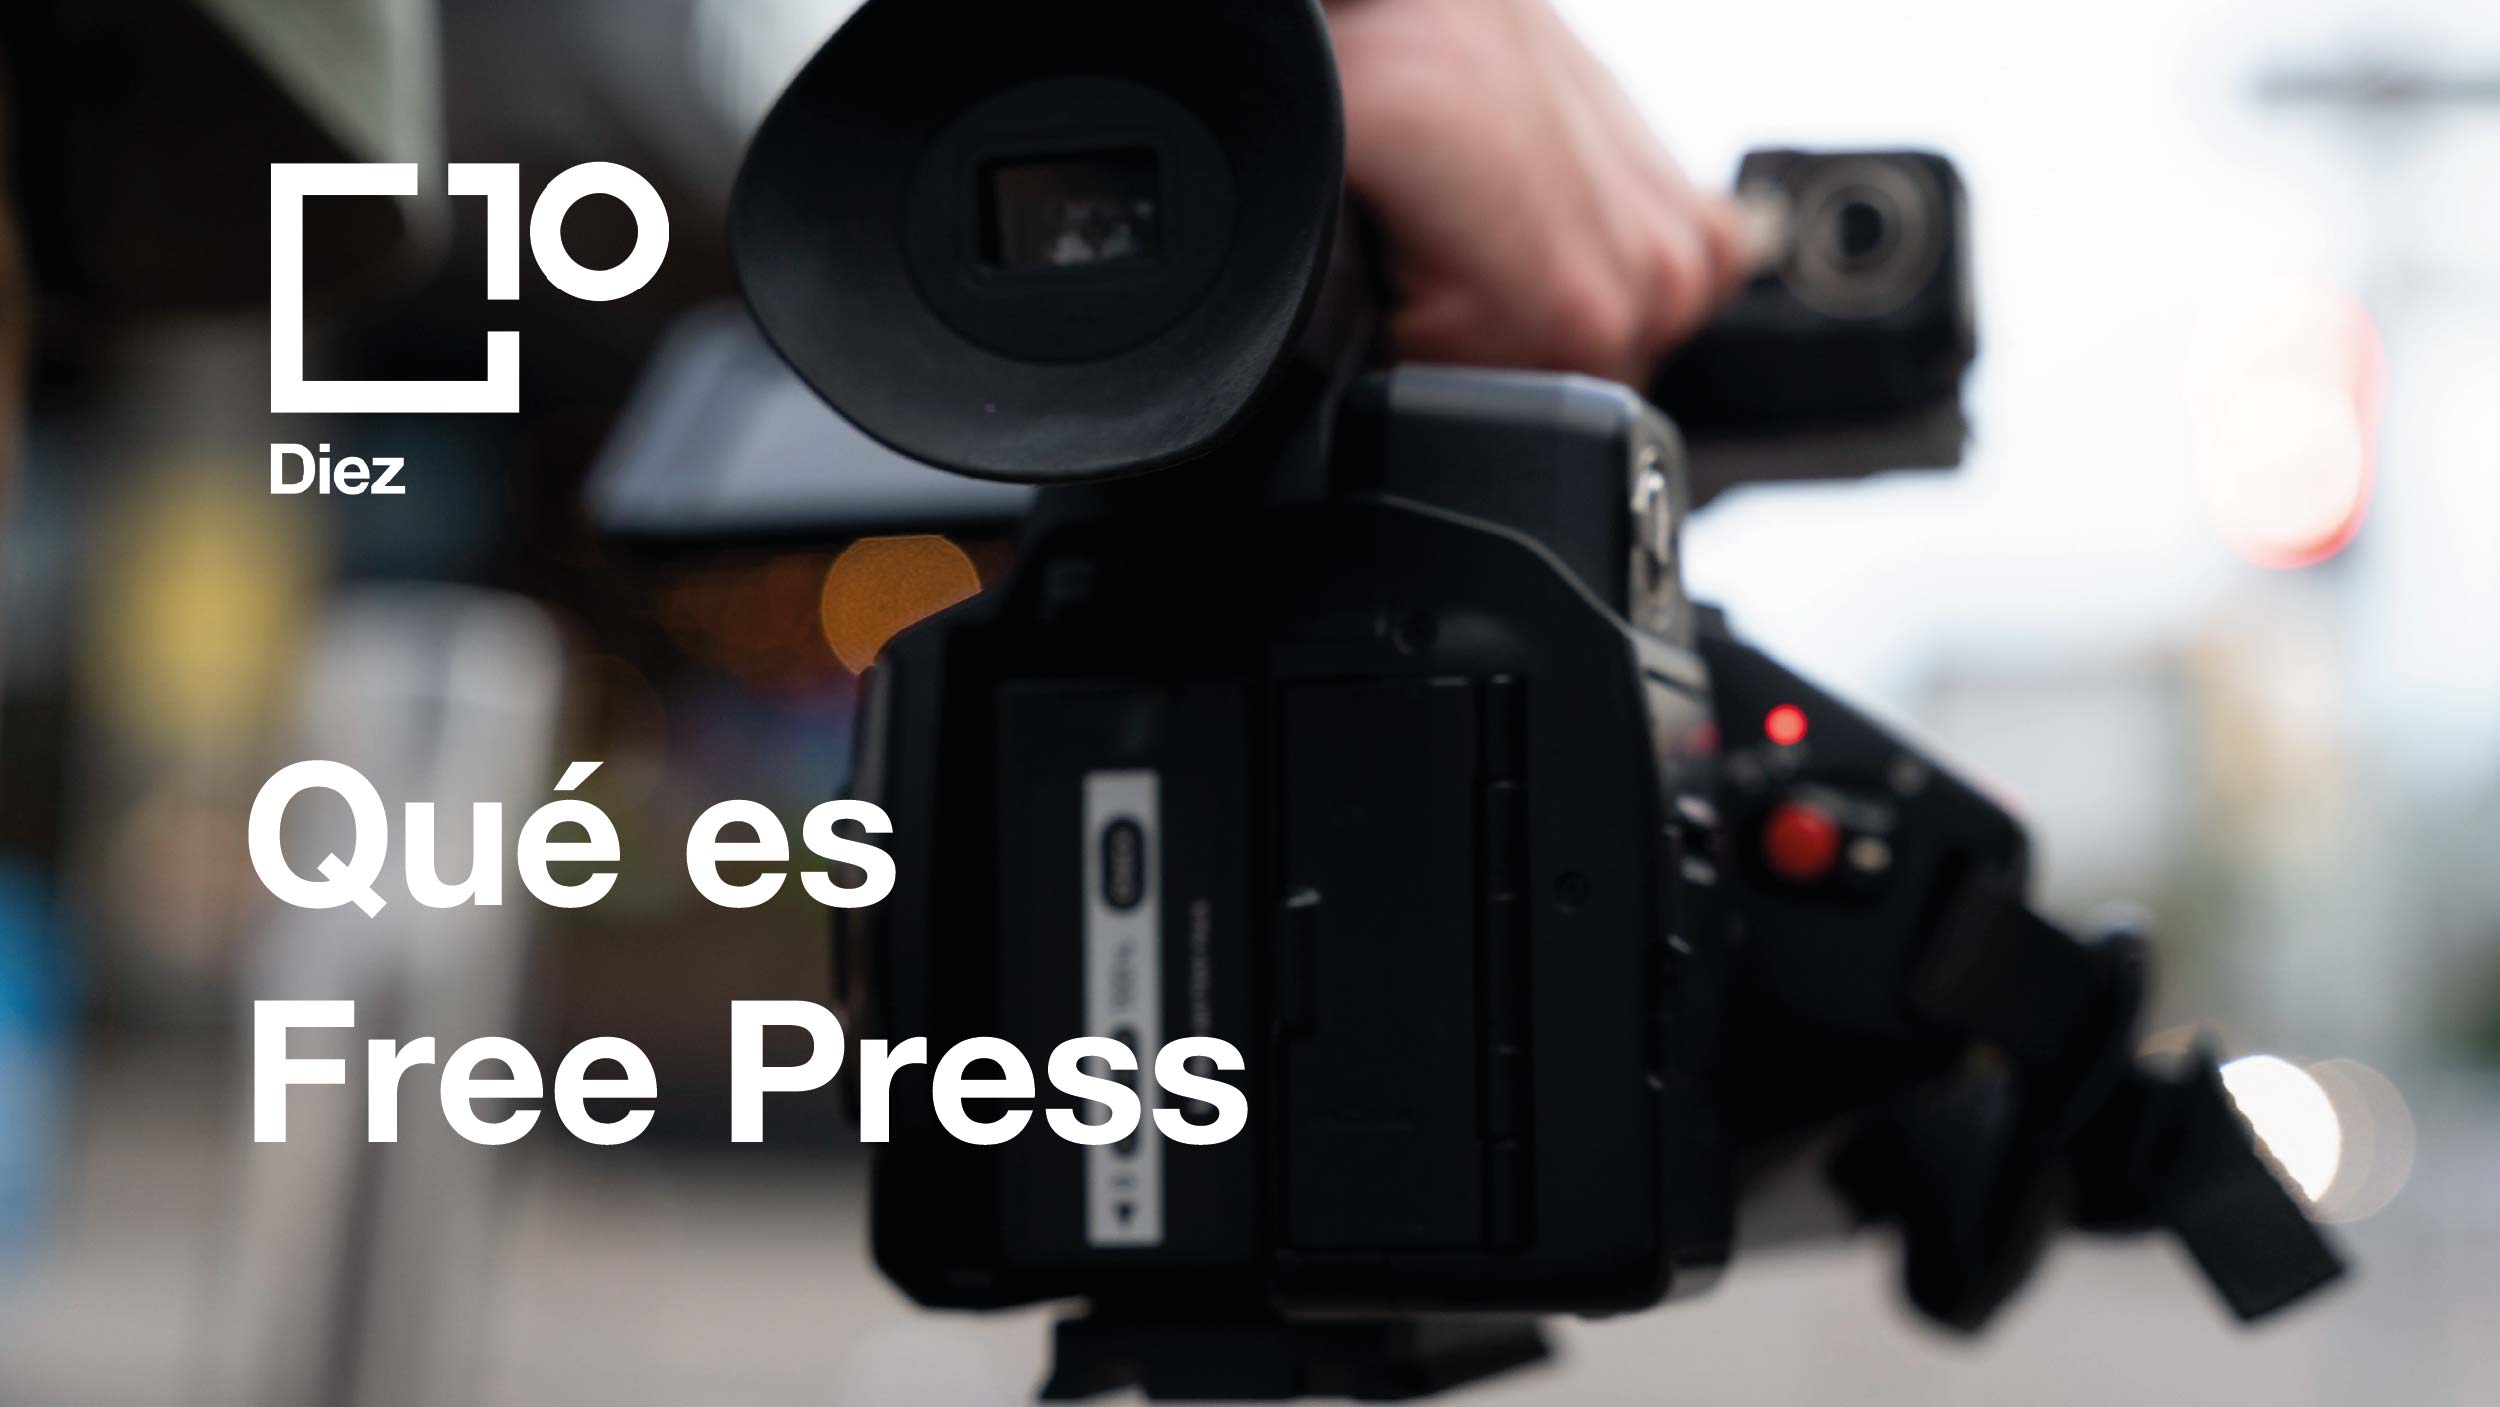 Imagen con la frase "que es free press".